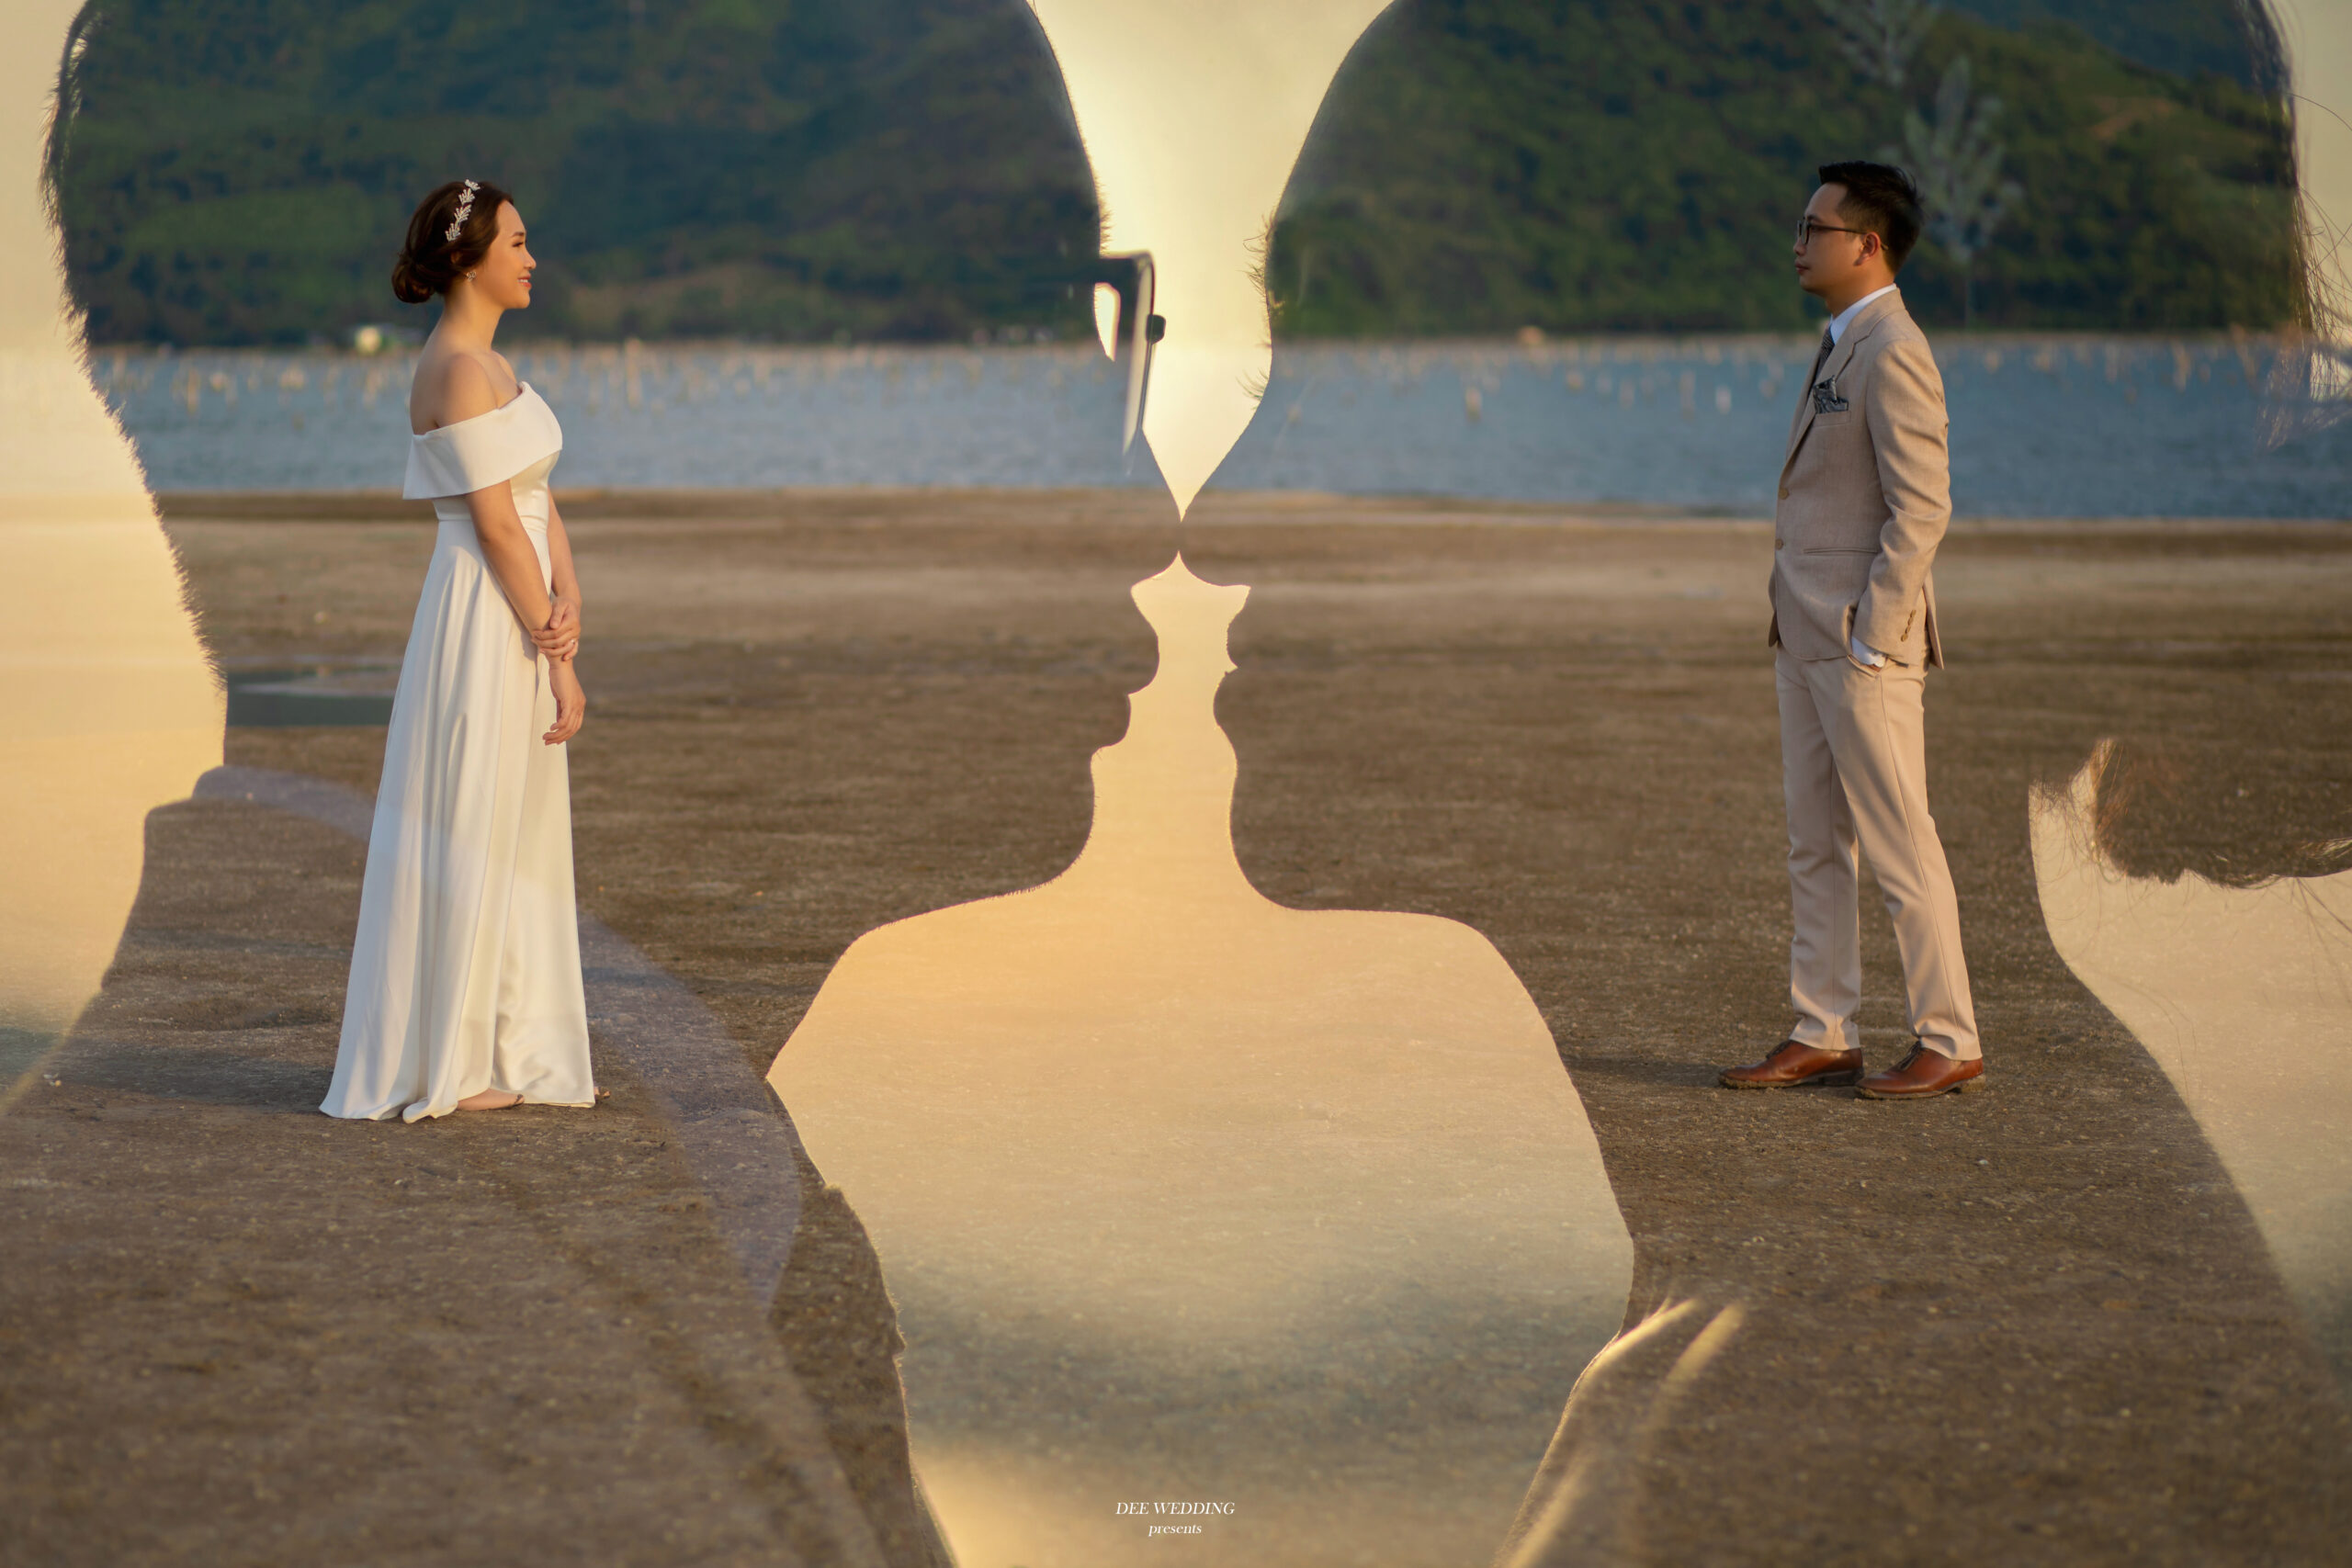 img src="Anh cuoi Hoi An 11.jpg" alt="Ảnh cưới chụp tại bờ biển cửa Đại có cặp đôi đang nhìn nhau"